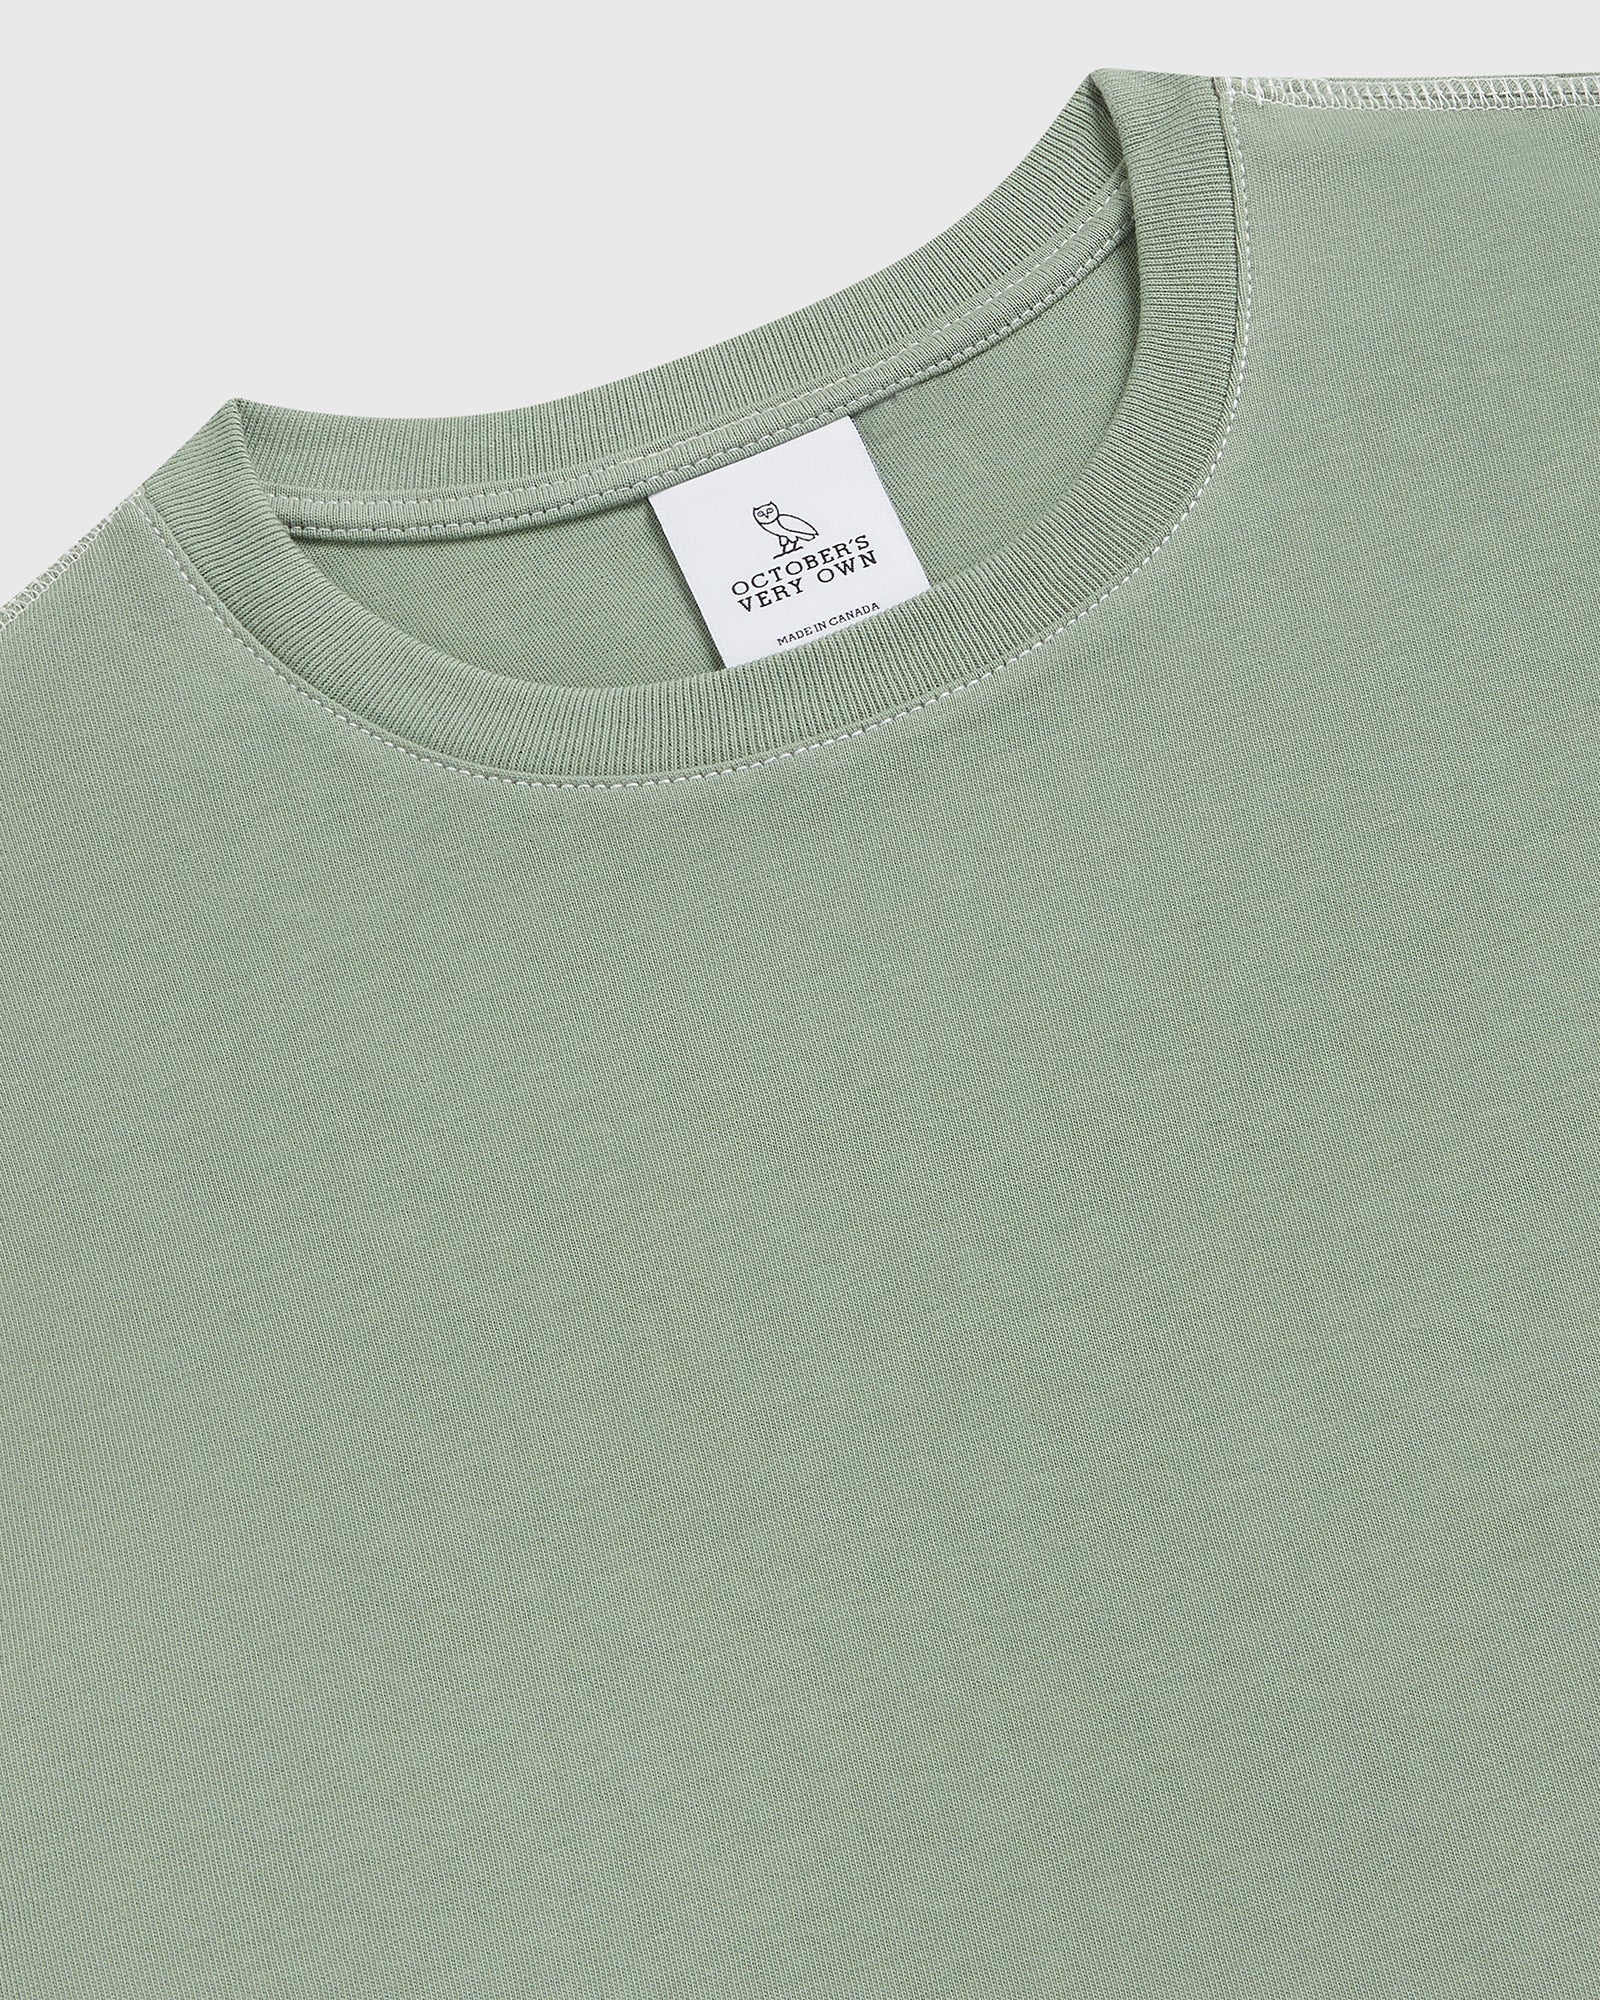 Contrast Stitch T-Shirt - Mint